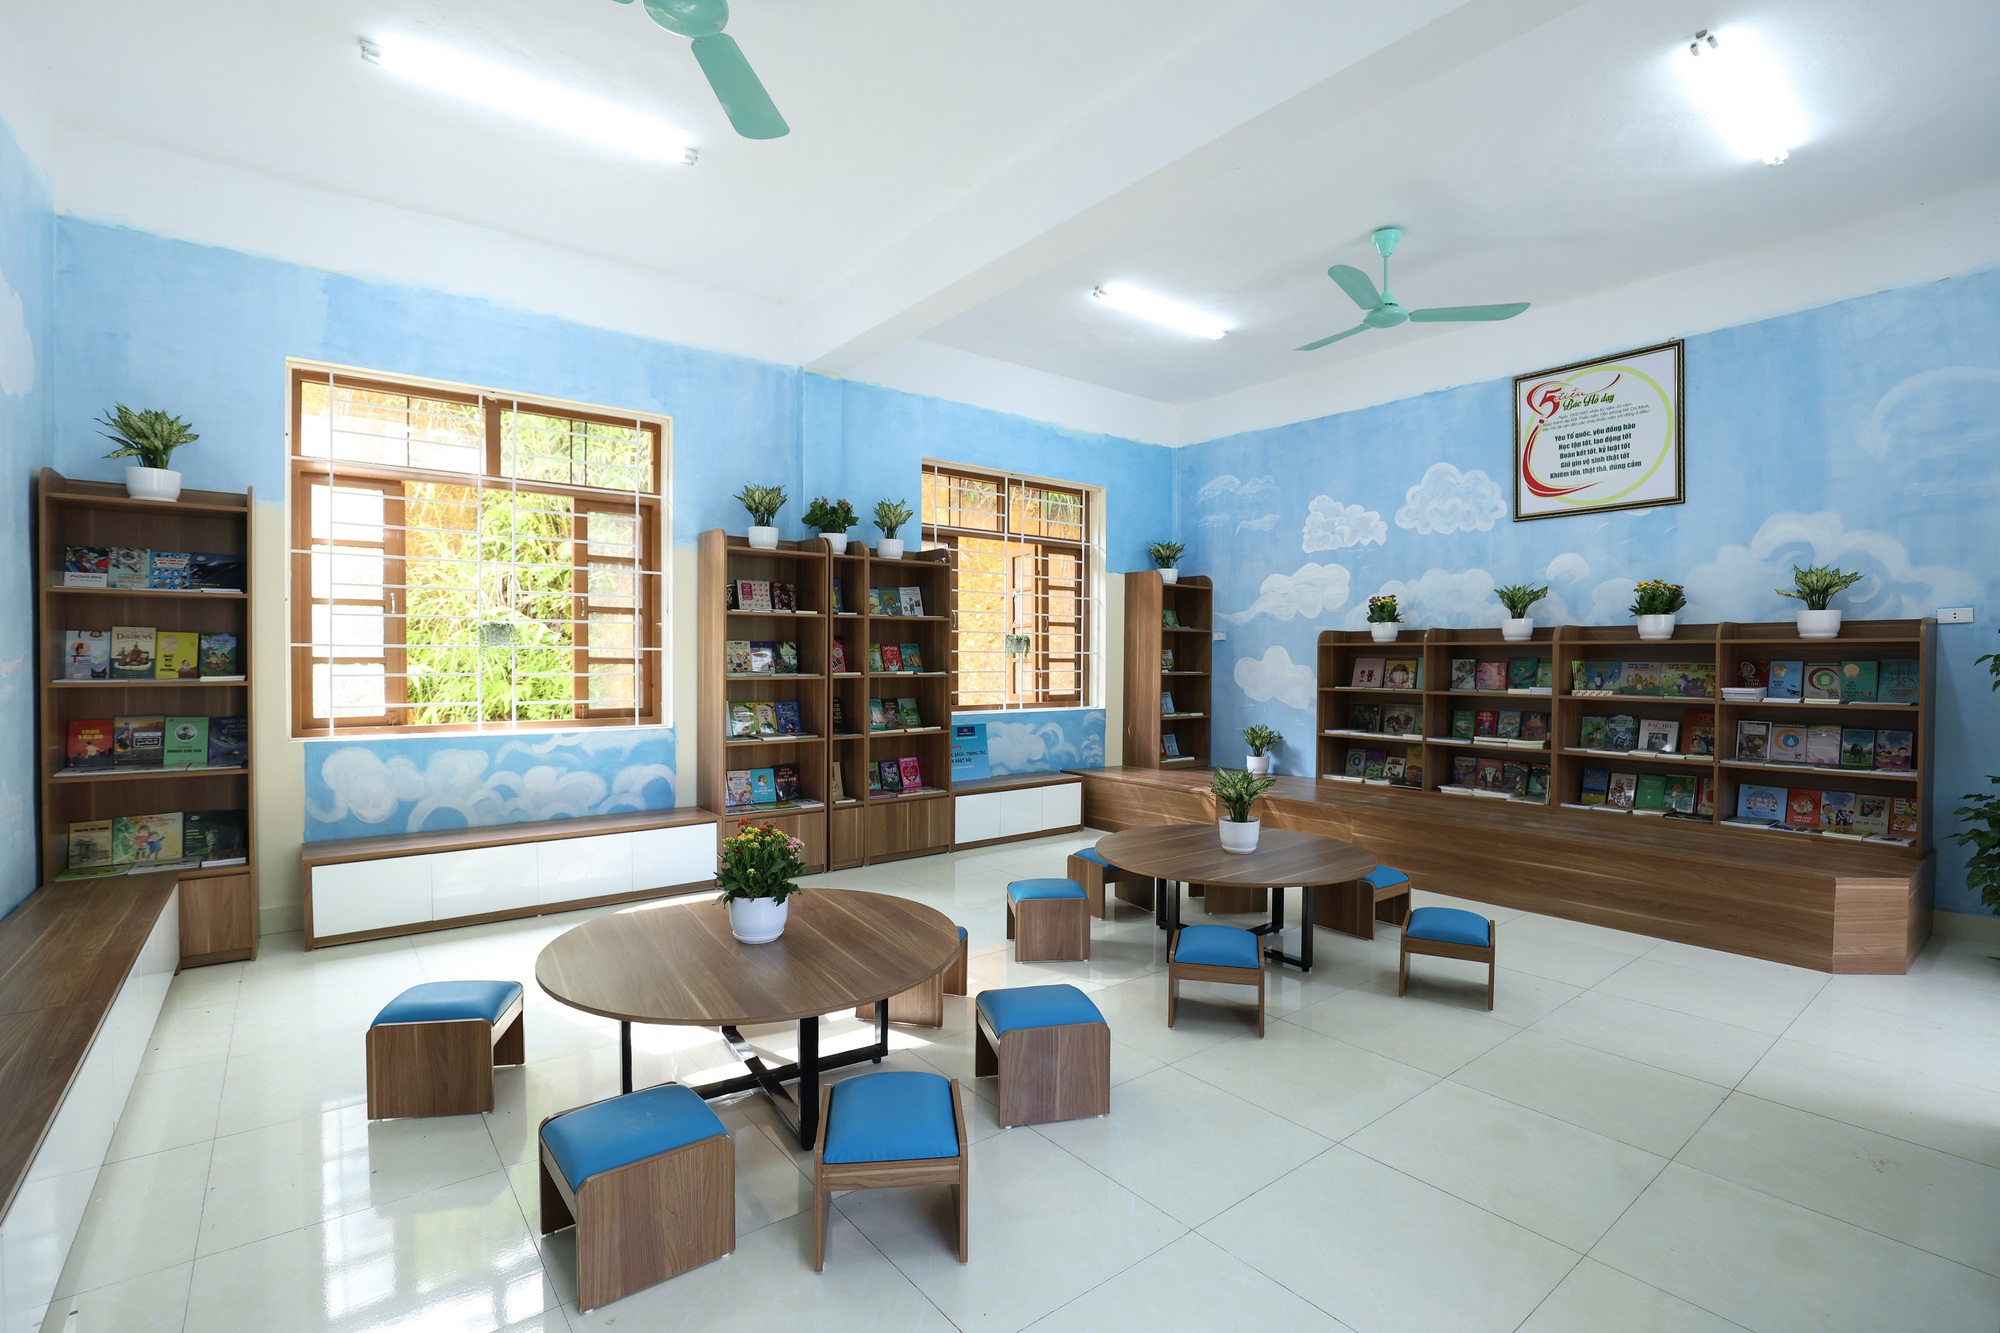 Vietnam Airlines xây dựng Thư viện xanh cho trẻ em tại vùng cao đặc biệt khó khăn - Ảnh 4.